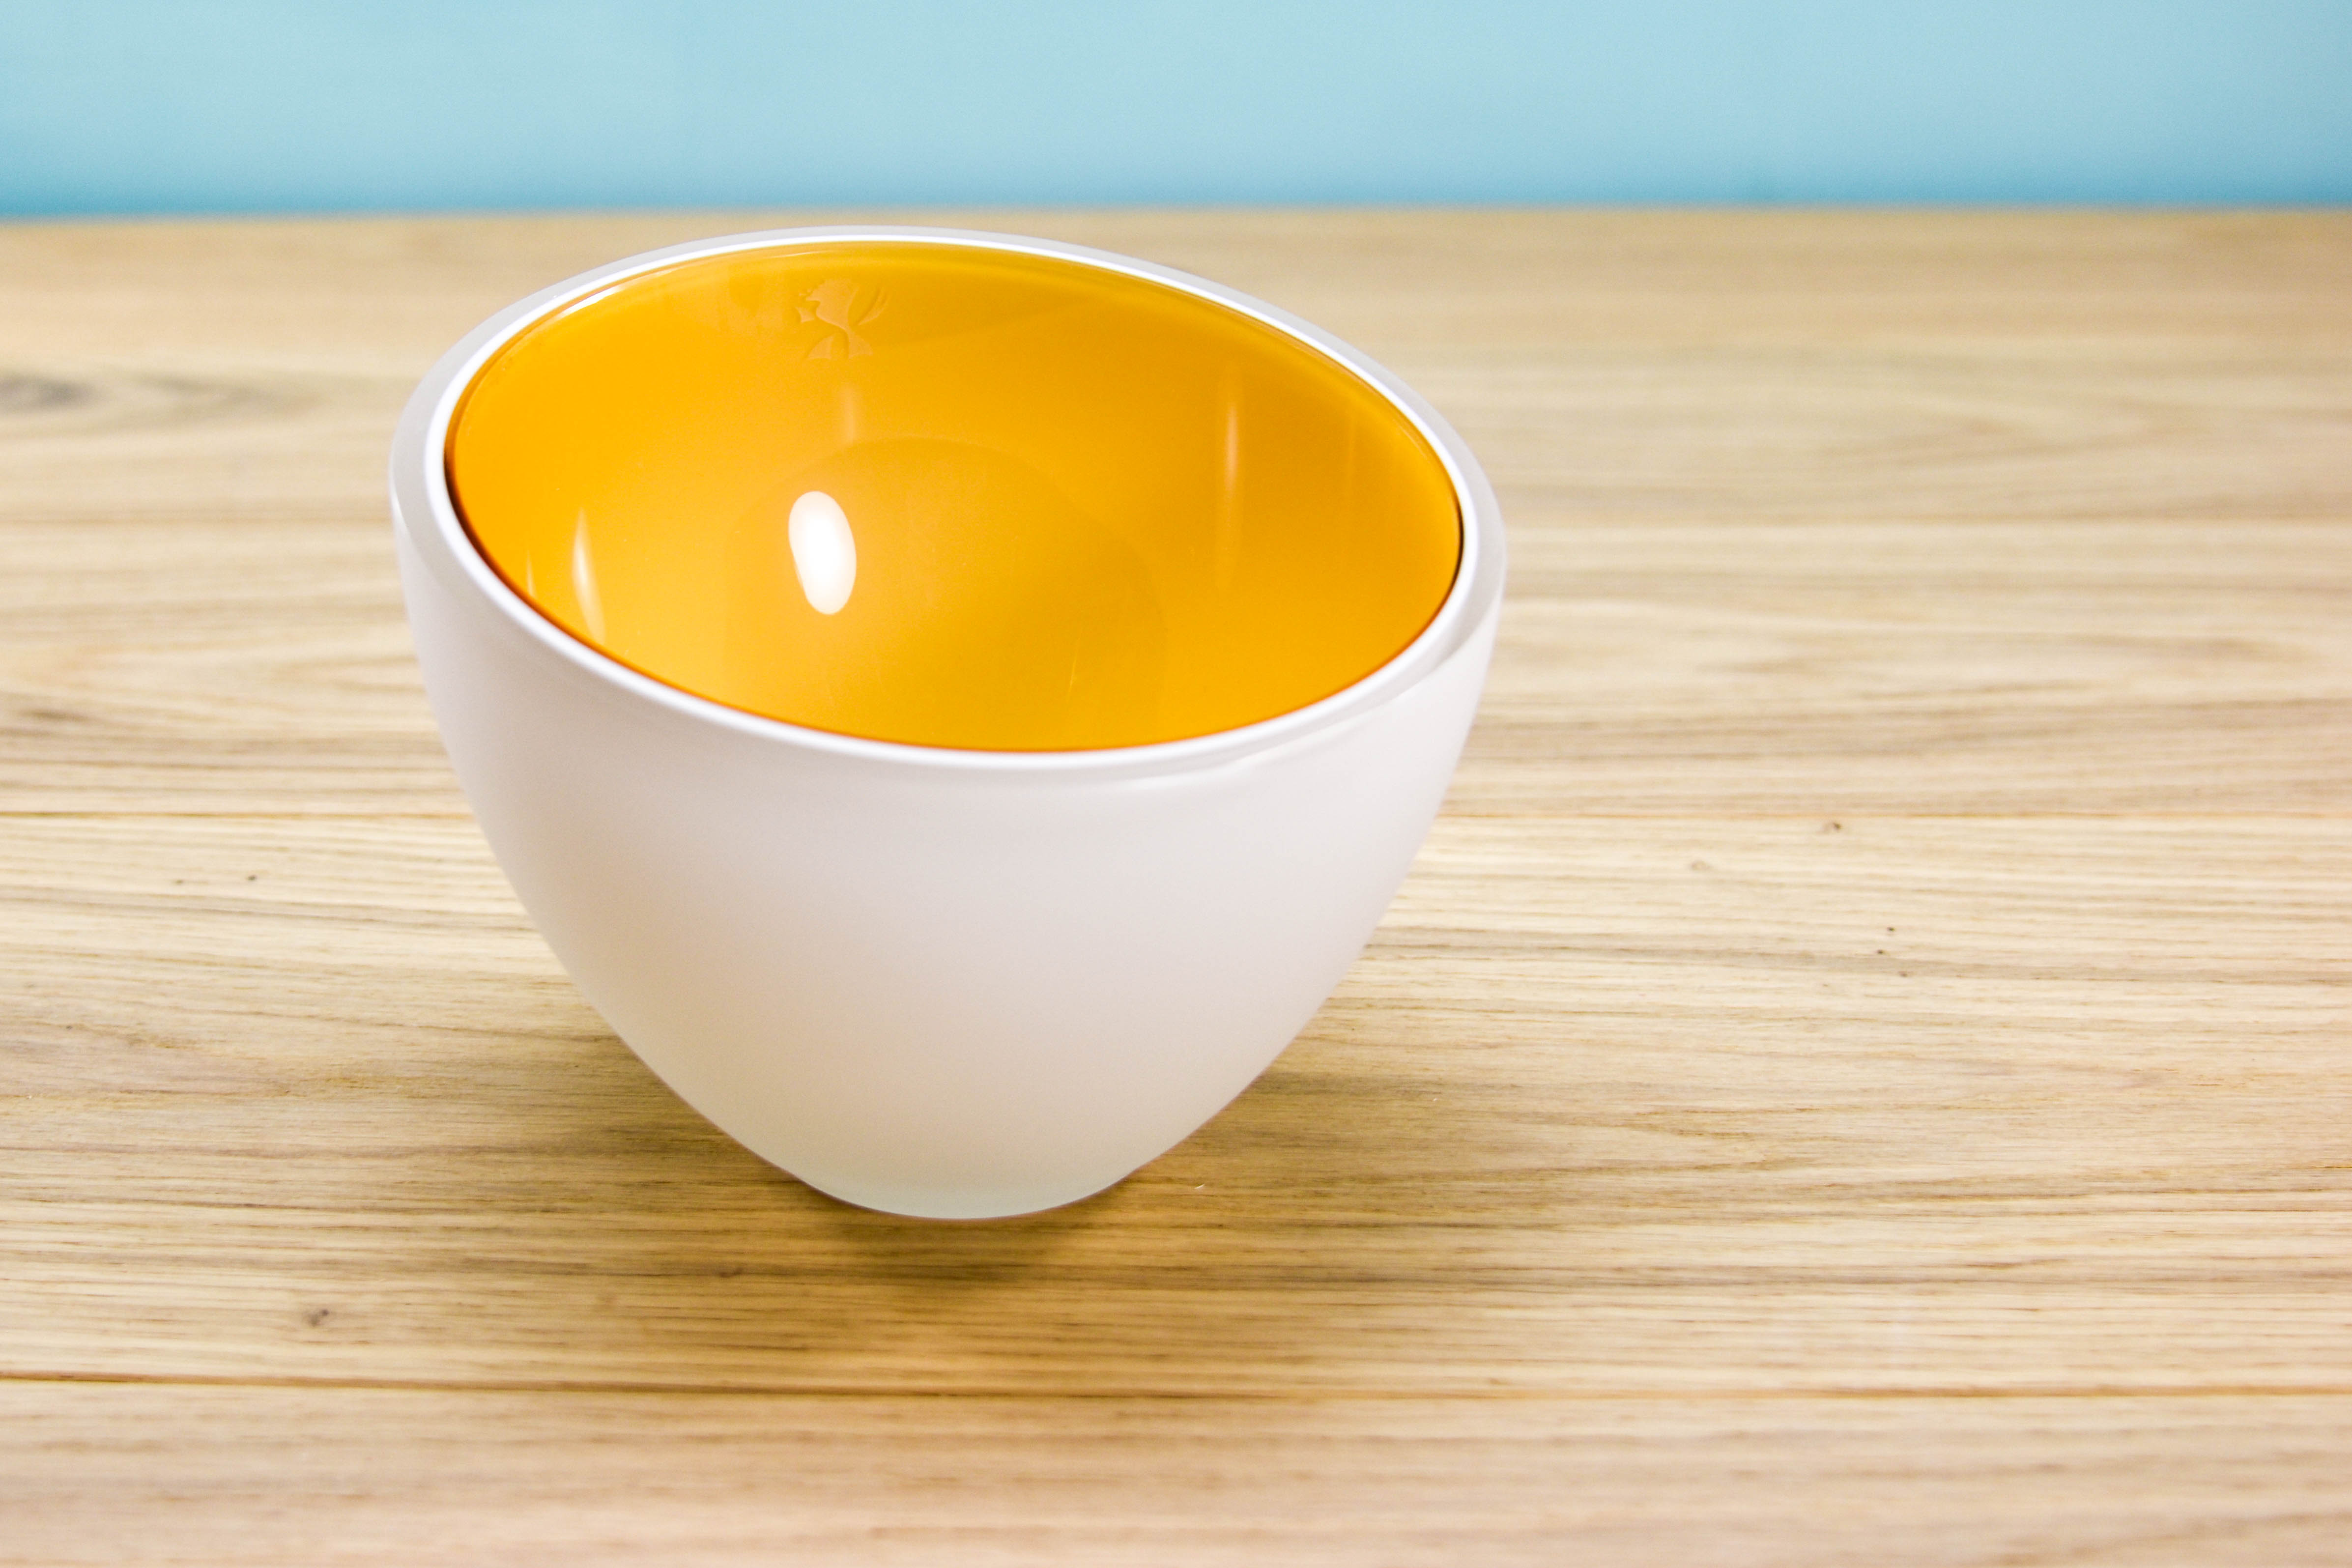 Nanus Amber Bowl